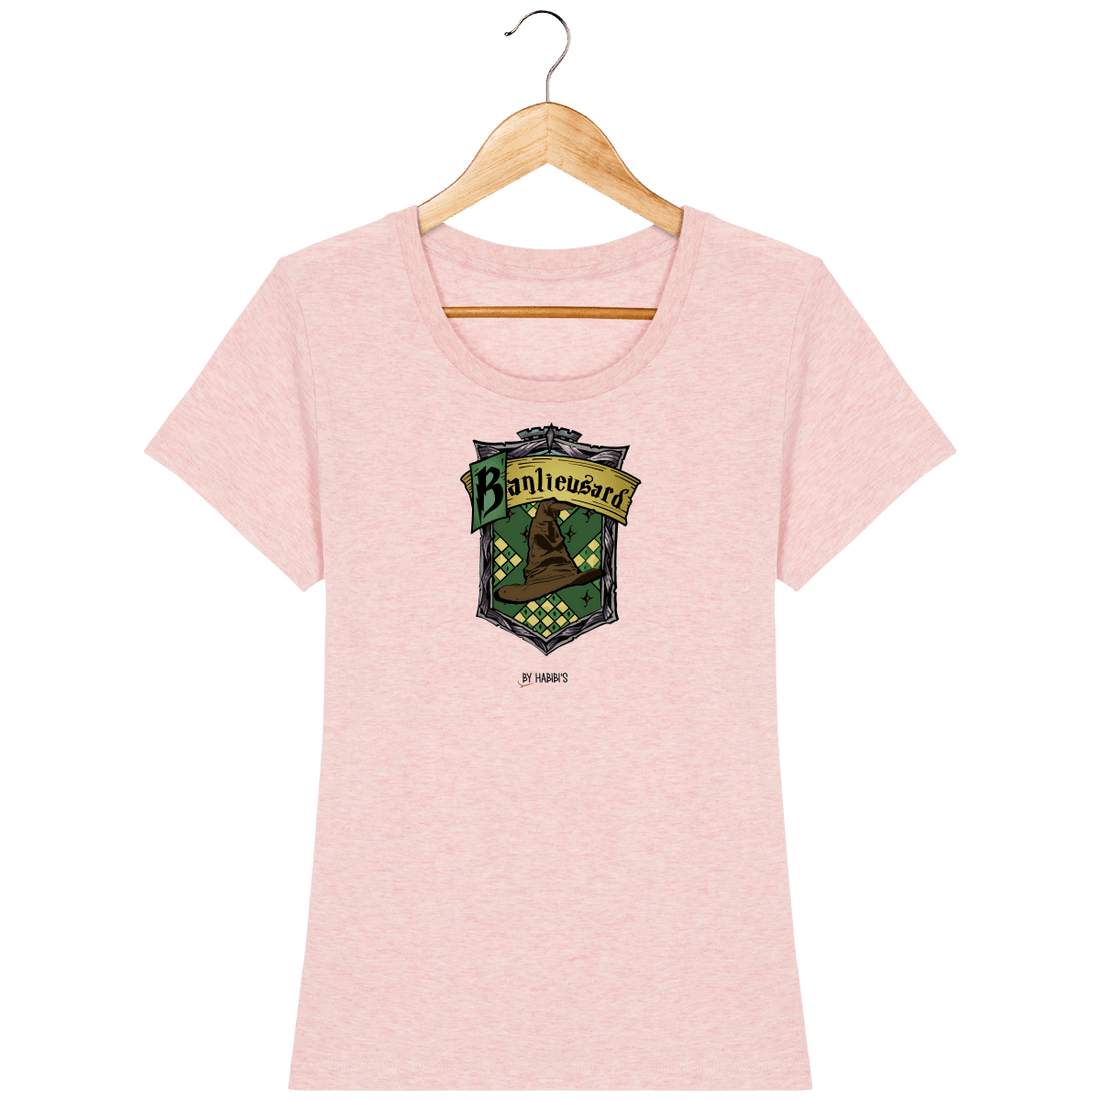 Femme>Tee-shirts - T-shirt Femme <br> Serpentard Banlieusard